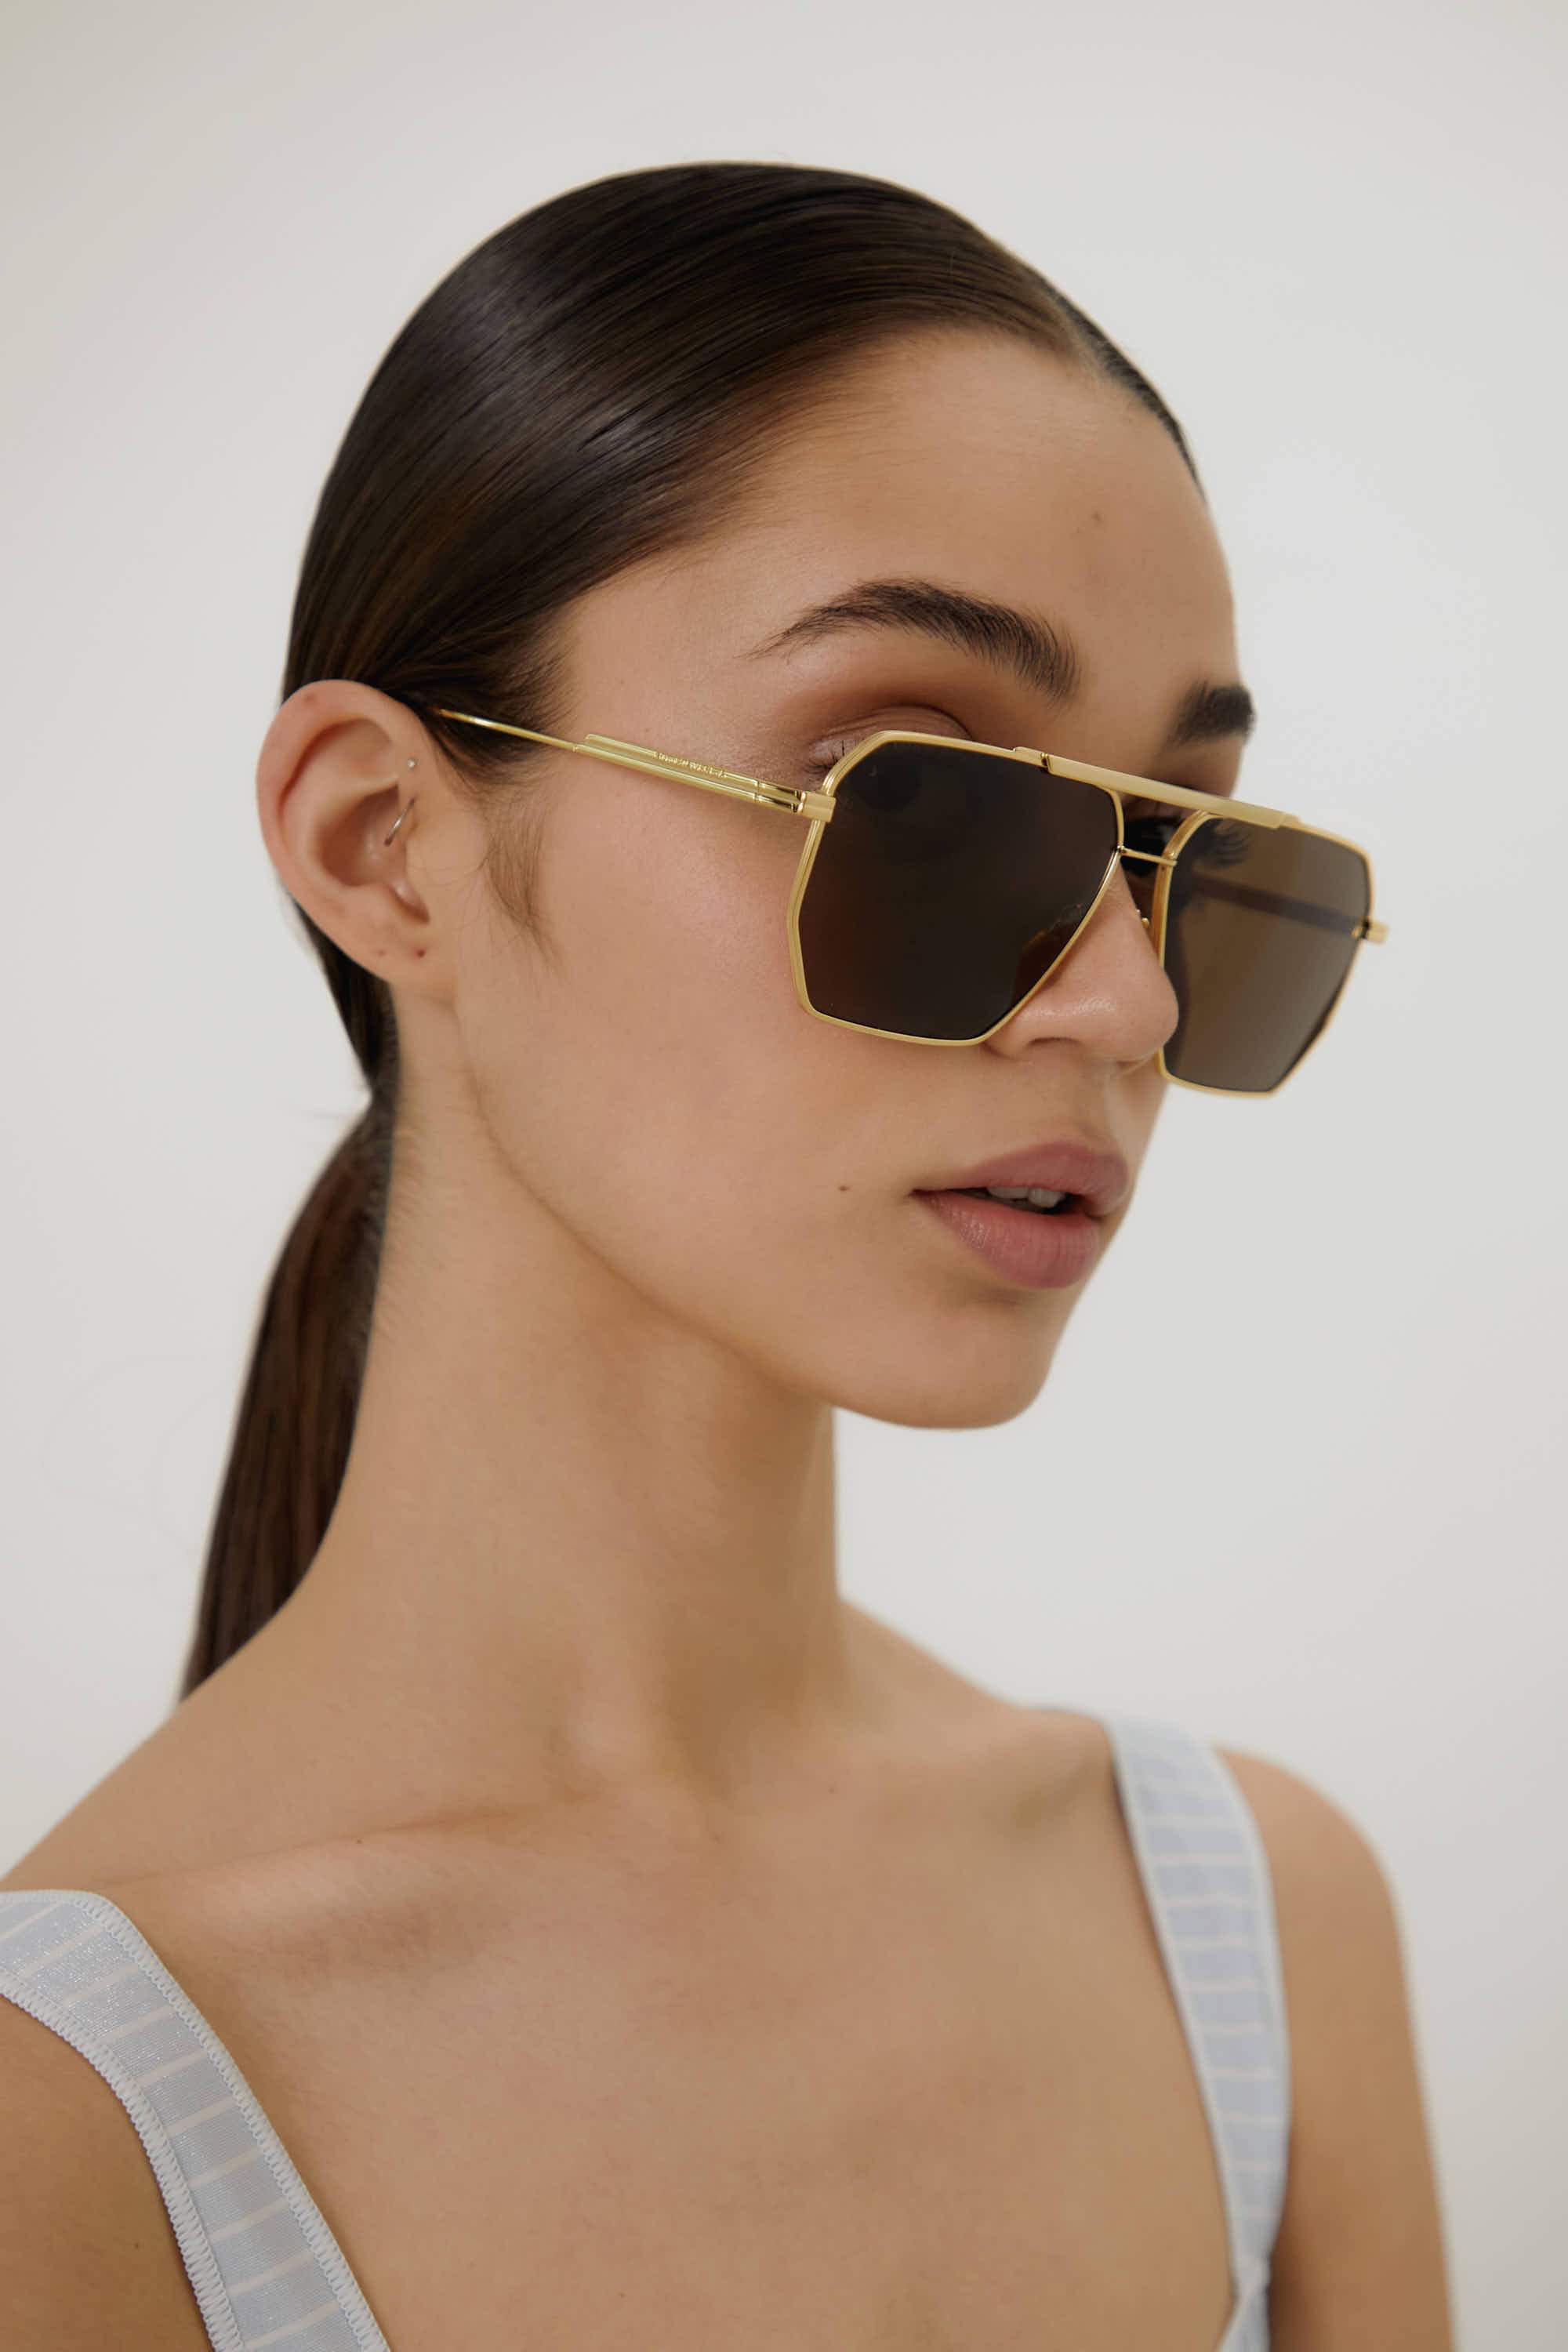 Bottega Veneta caravan gold and brown sunglasses - Eyewear Club